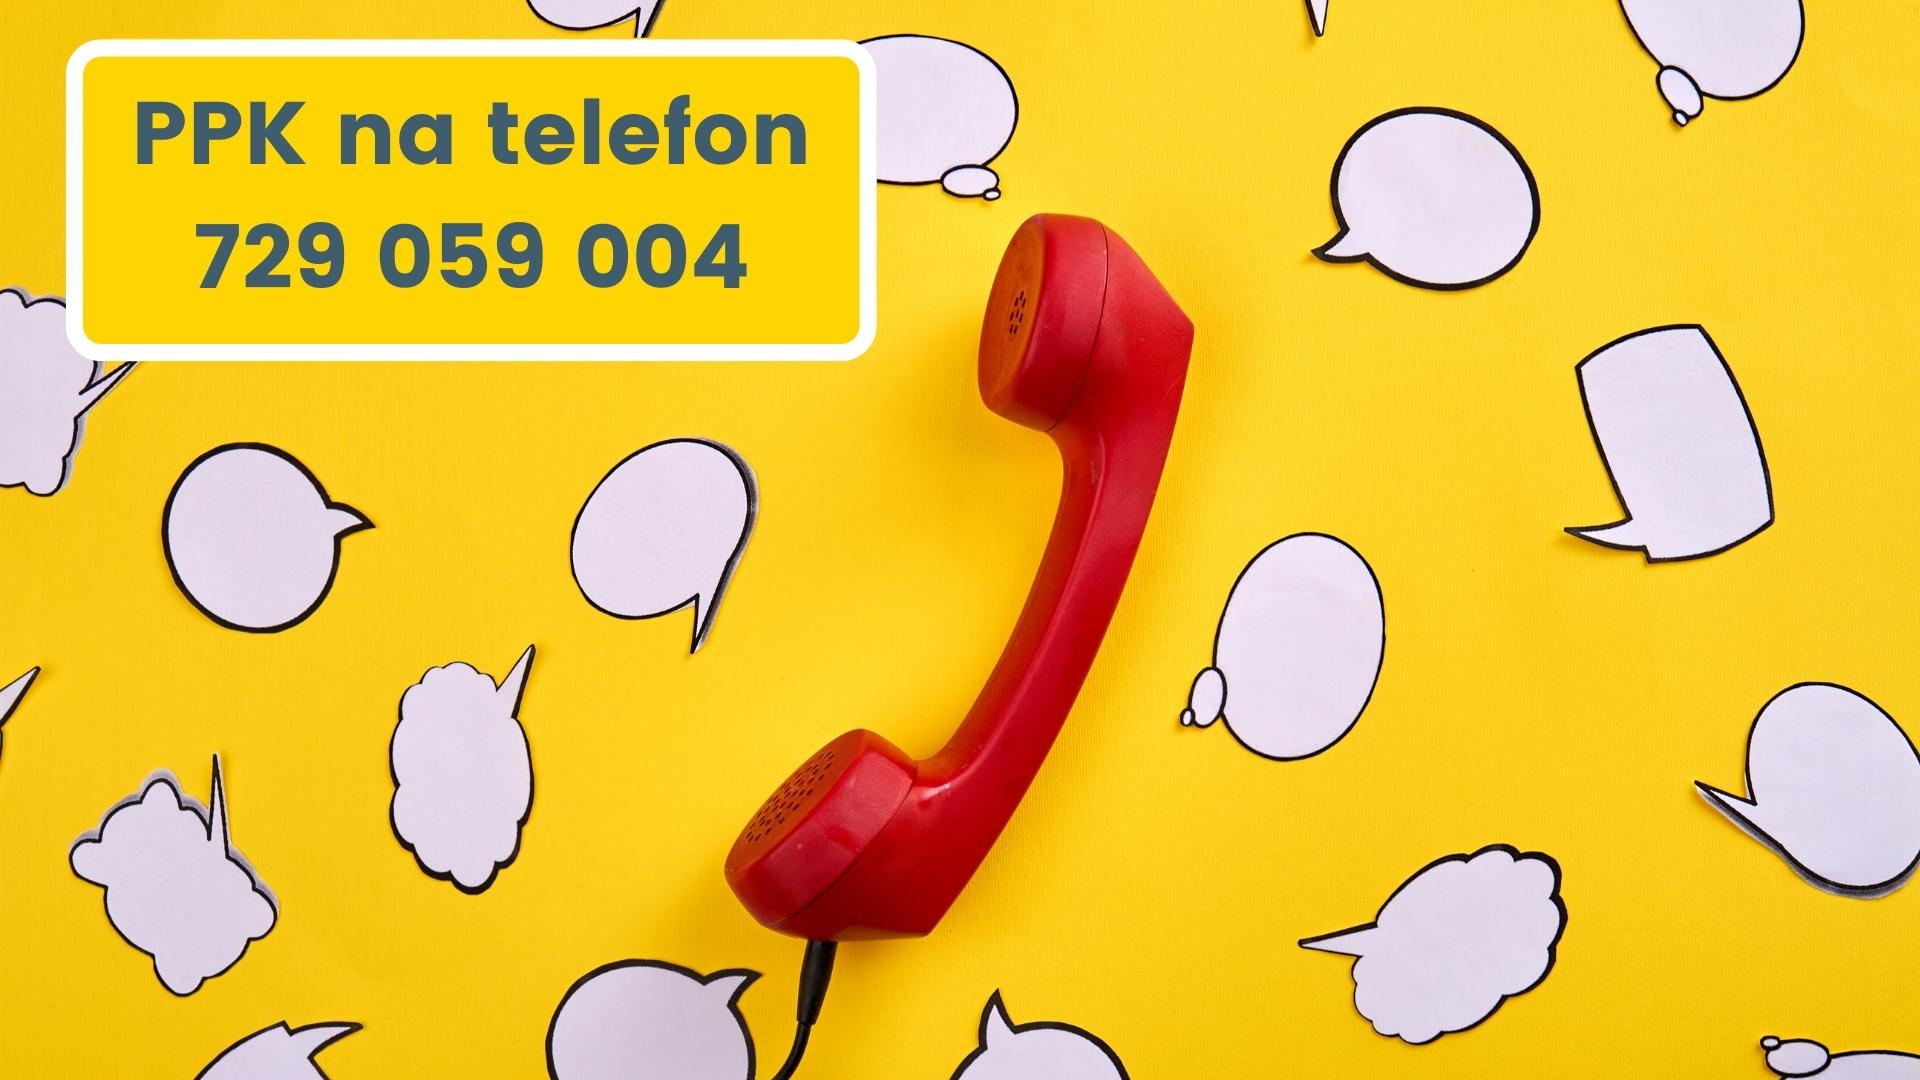 PPK na telefon – zadzwoń i skorzystaj z porady eksperta regionalnego w godzinach 10:00 - 12:00